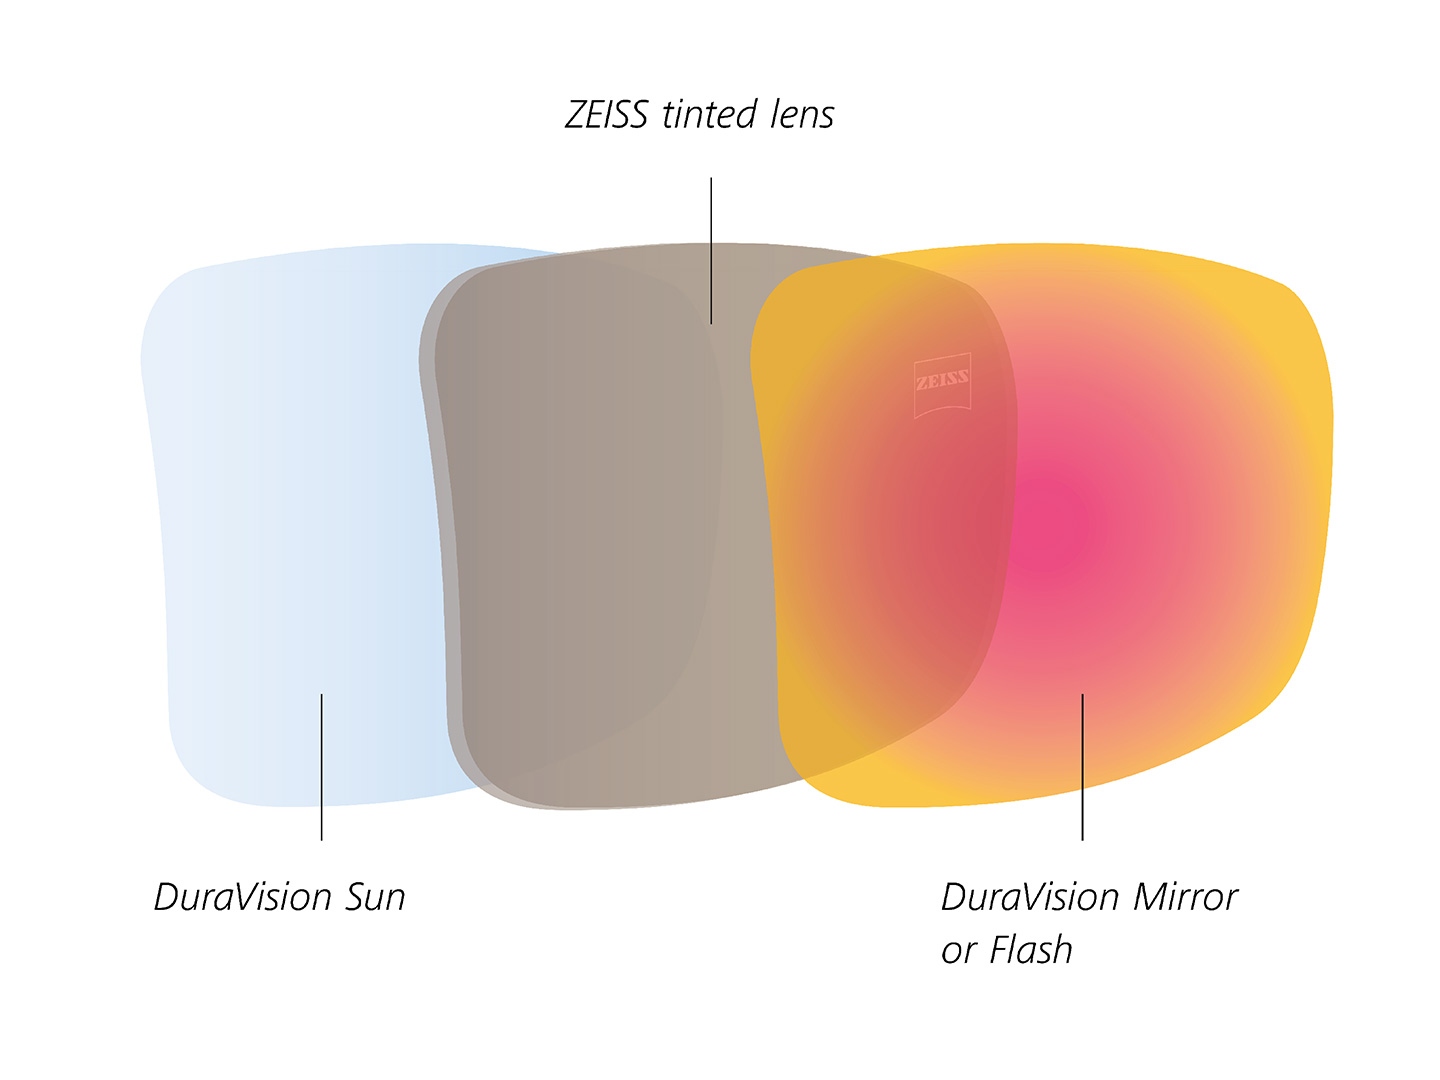 Ilustración de lentes tintadas de ZEISS con recubrimientos traseros y frontales para la luz solar 